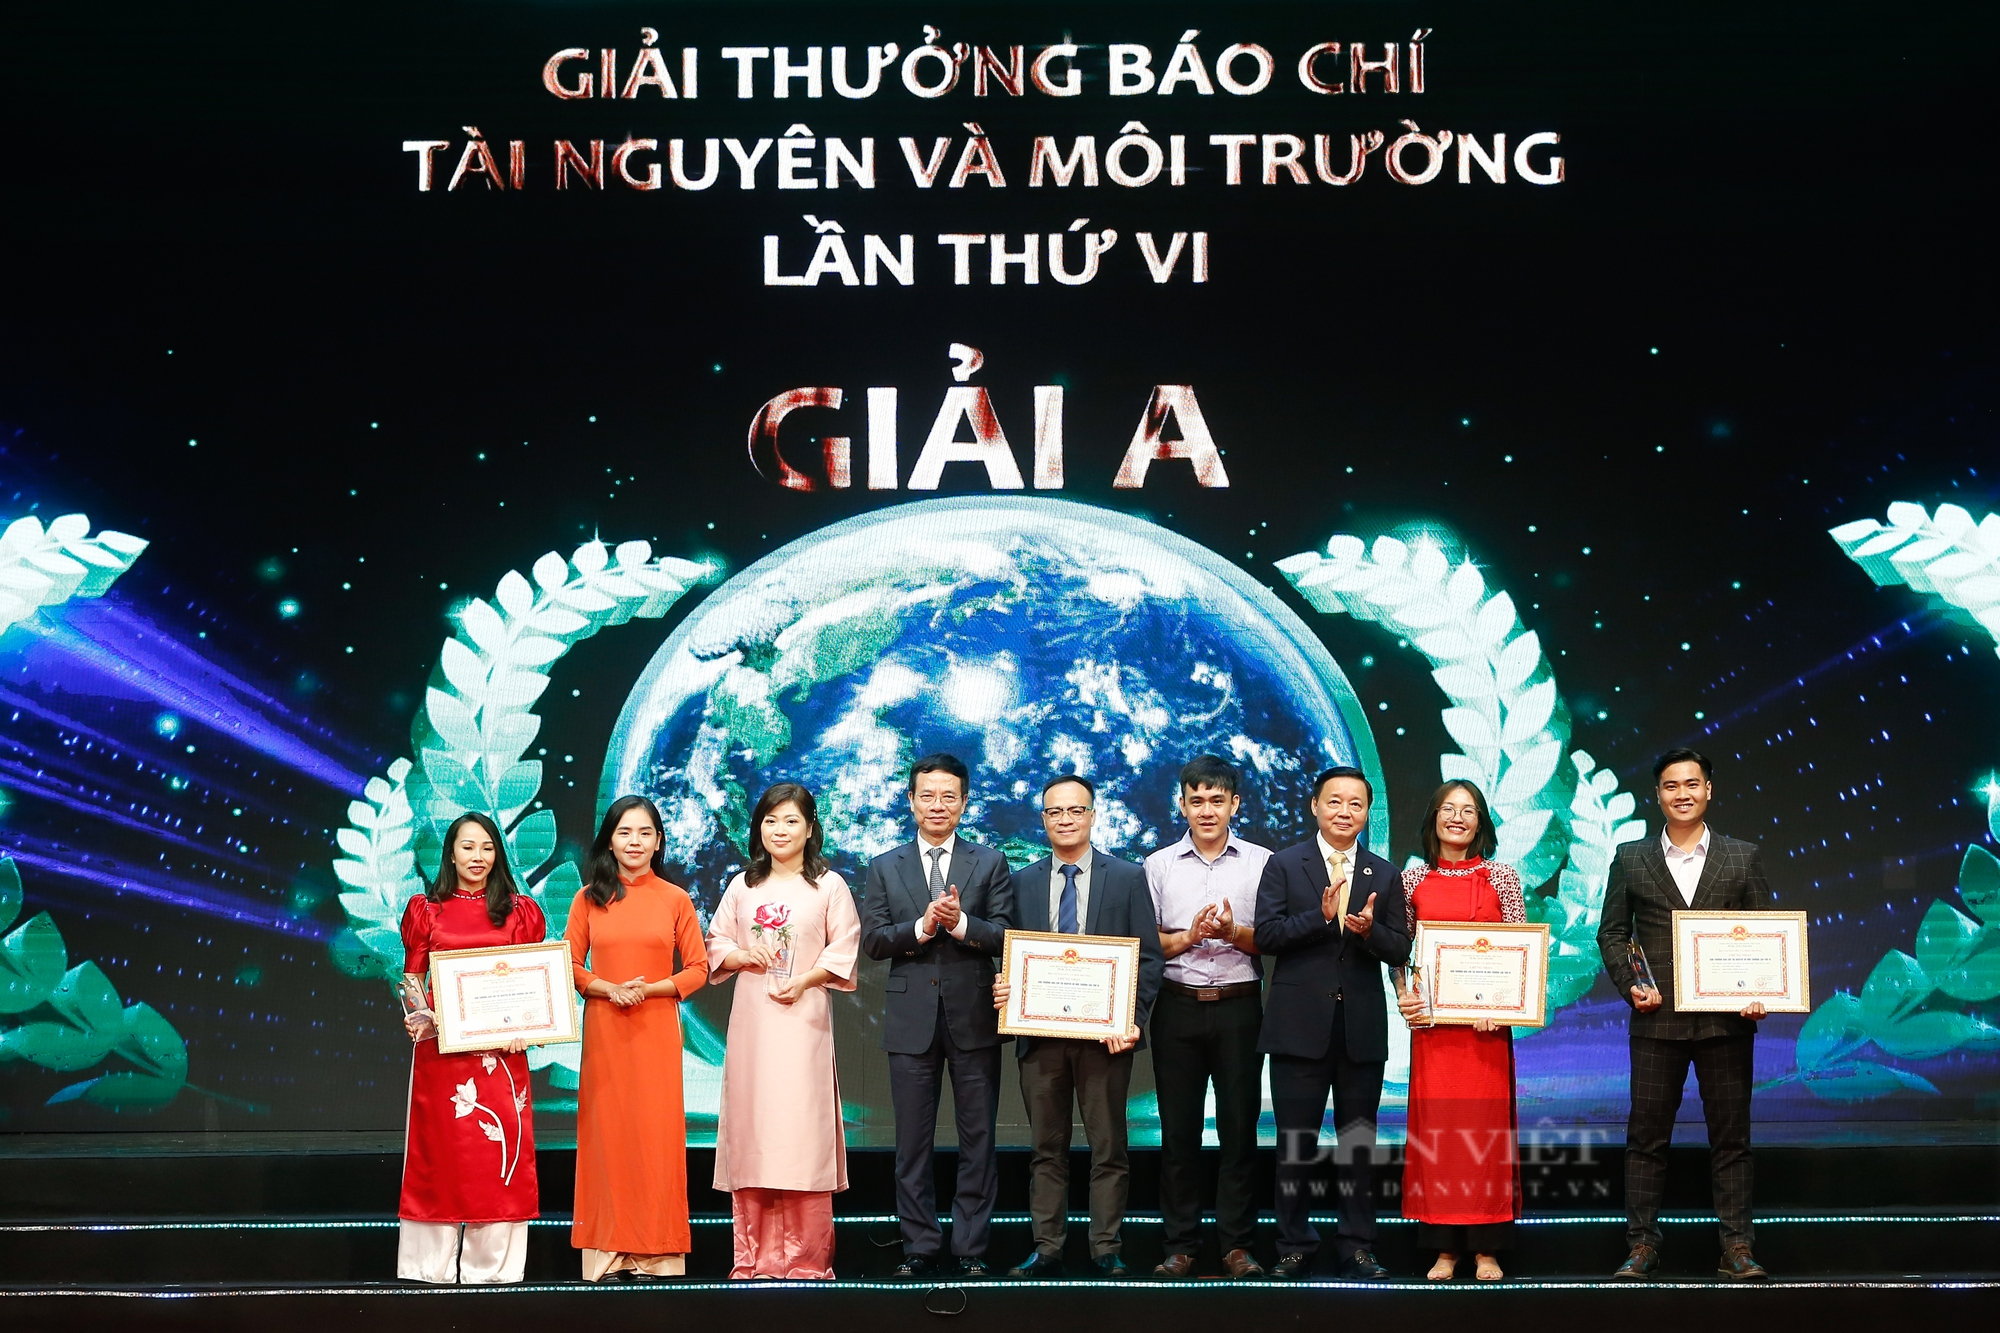 Báo NTNN/Dân Việt đoạt 1 Giải A, 1 Giải B tại Giải thưởng Báo chí Tài nguyên và Môi trường năm 2022 - Ảnh 8.